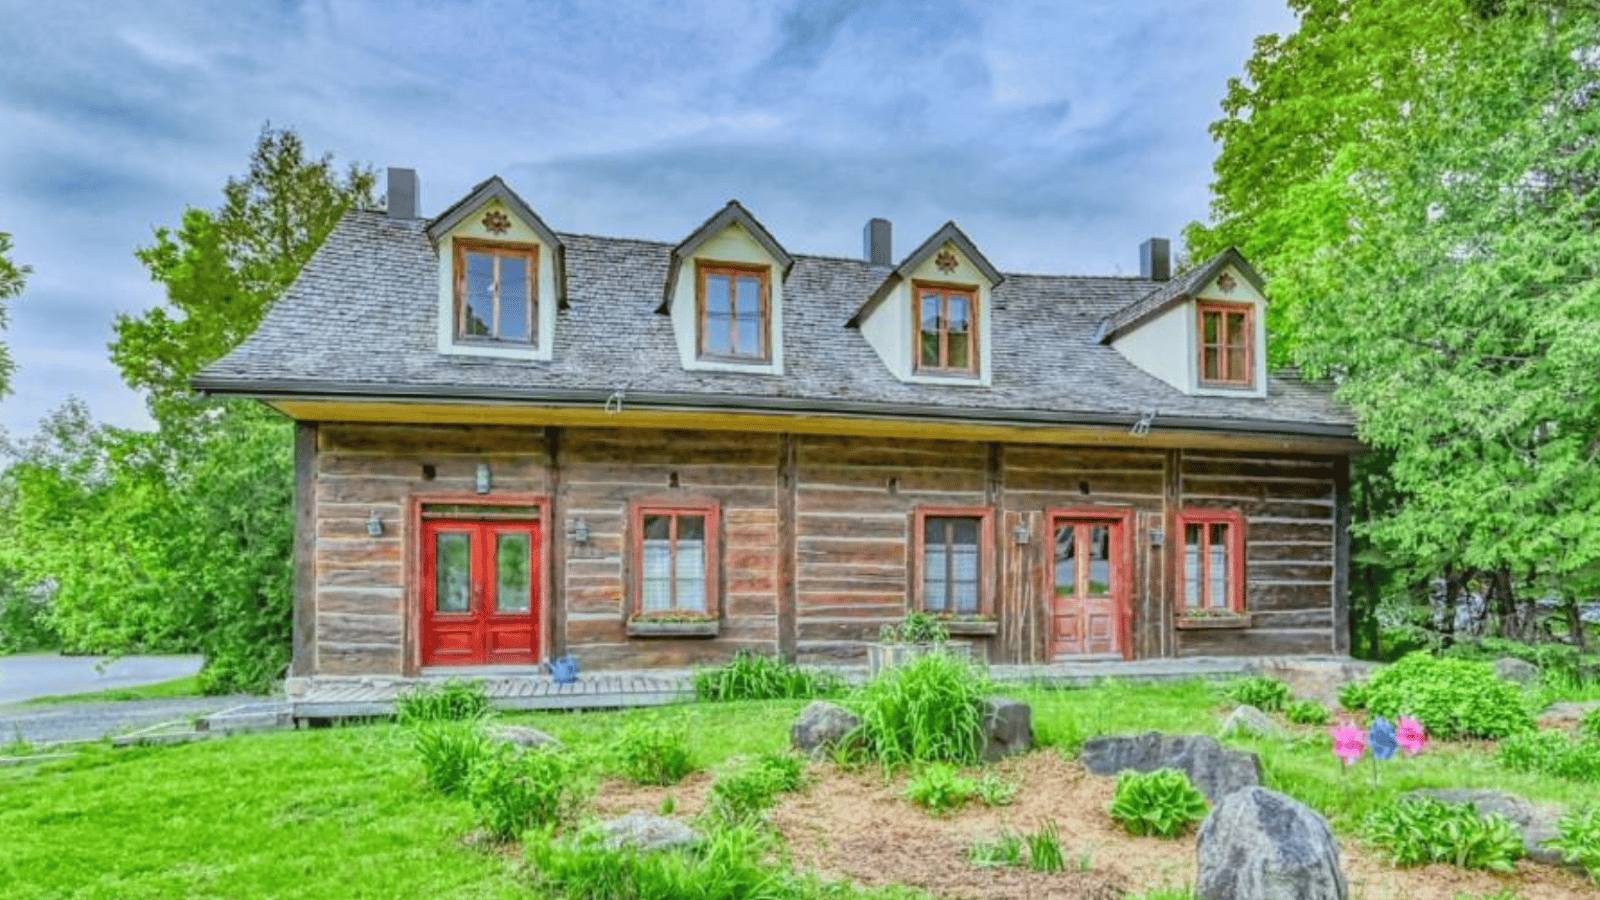 Magnifique maison canadienne centenaire complètement rénovée au coeur de la nature